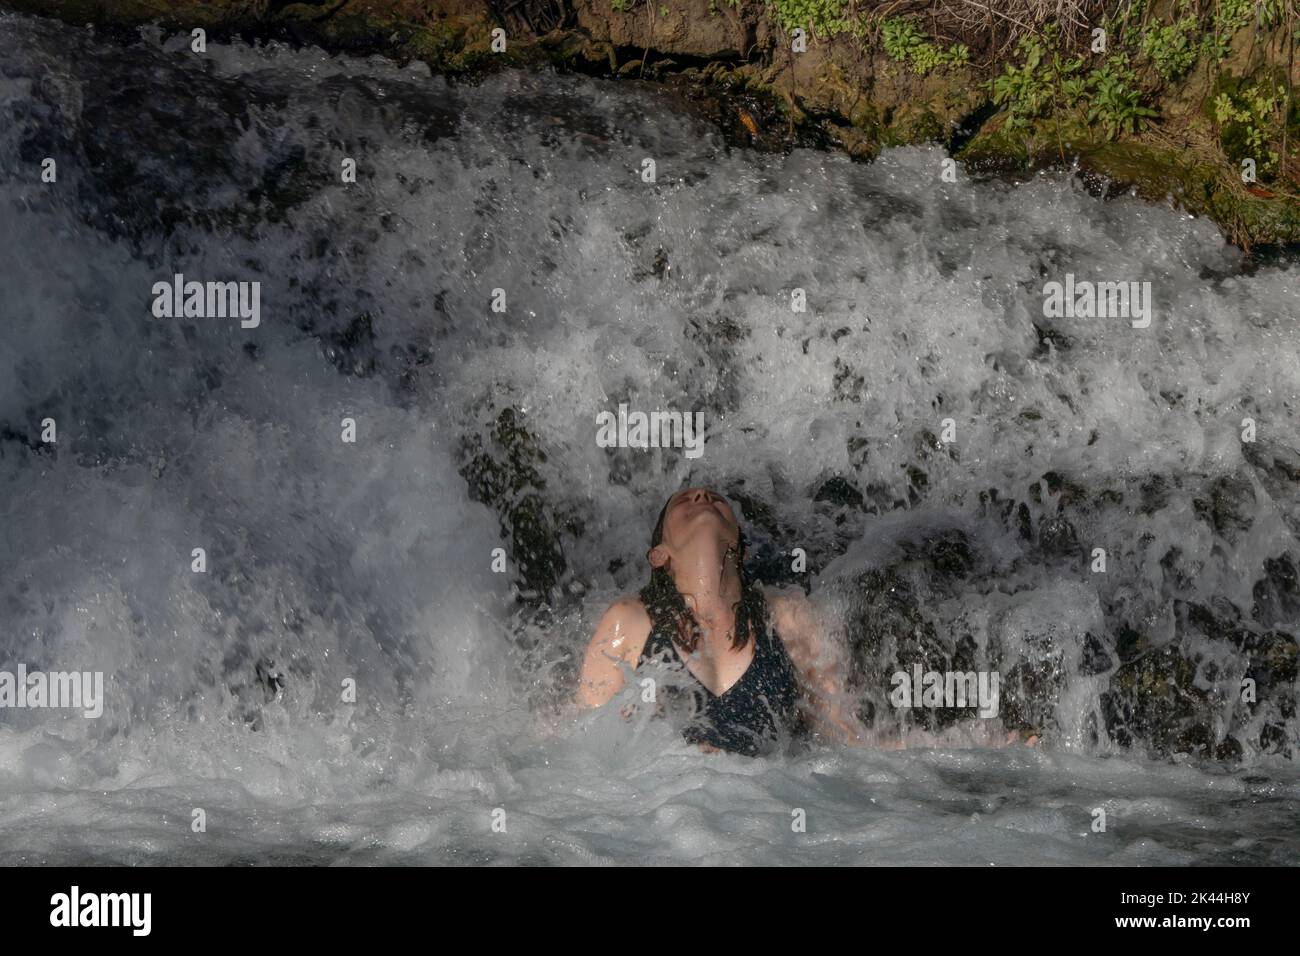 Une femme israélienne se baigne dans un bassin naturel d'eau de source du ruisseau Amal qui traverse le parc national de Gan Hashlosha également connu sous son nom arabe Sakhne en Israël Banque D'Images